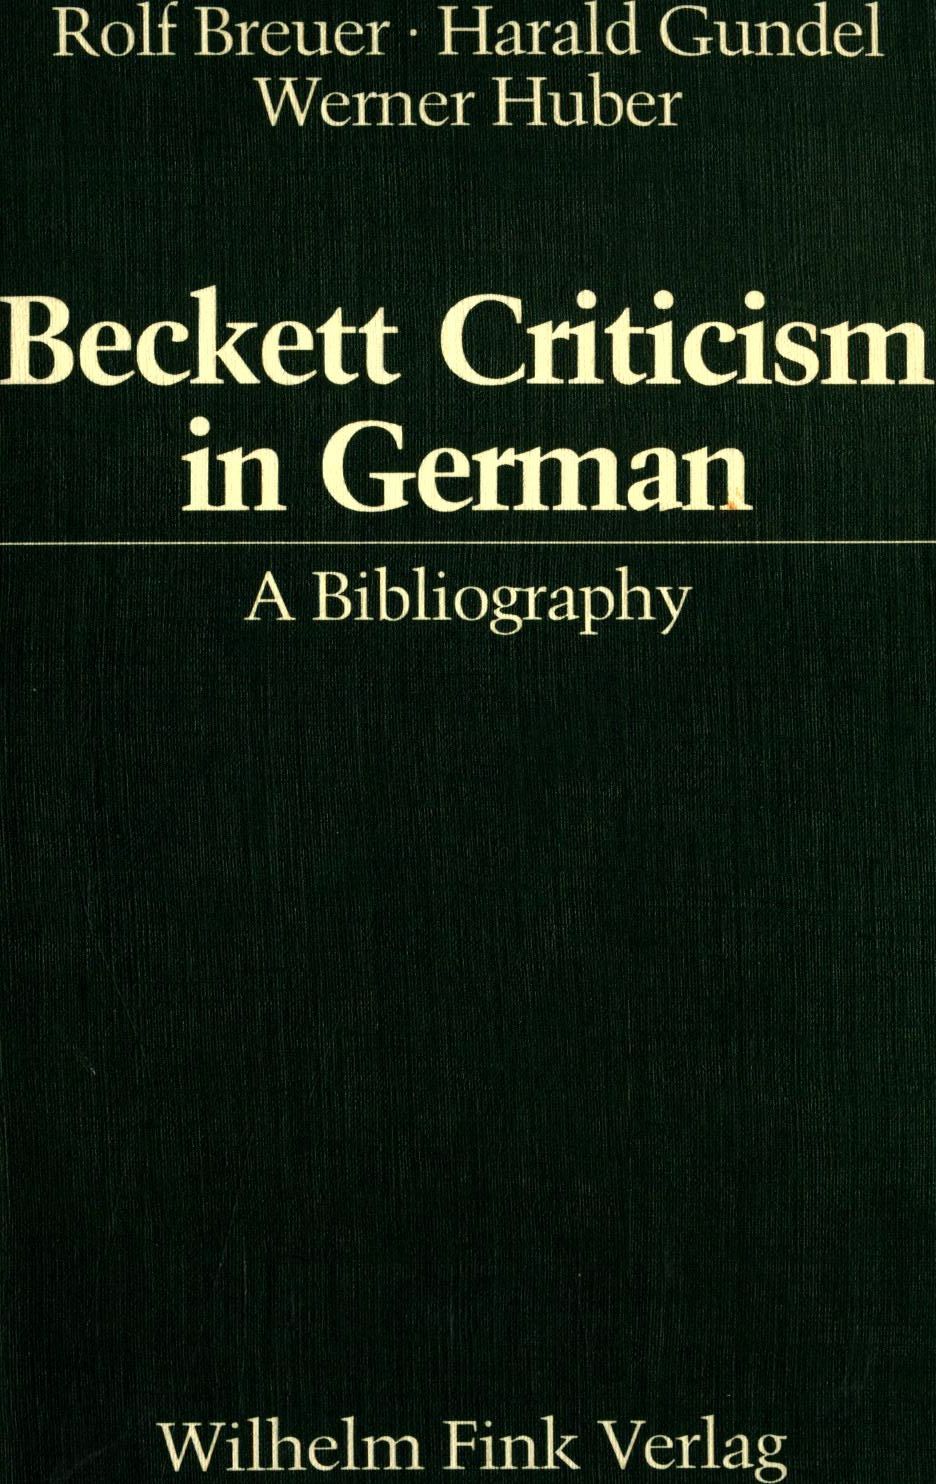 Beckett Criticism in German: A Bibliography = Deutsche Beckett-Kritik : Eine Bibliographie = Samuel Beckett: Bibliographie de la critique allemande - Breuer, Rolf, Harald Gundel  und Werner Huber